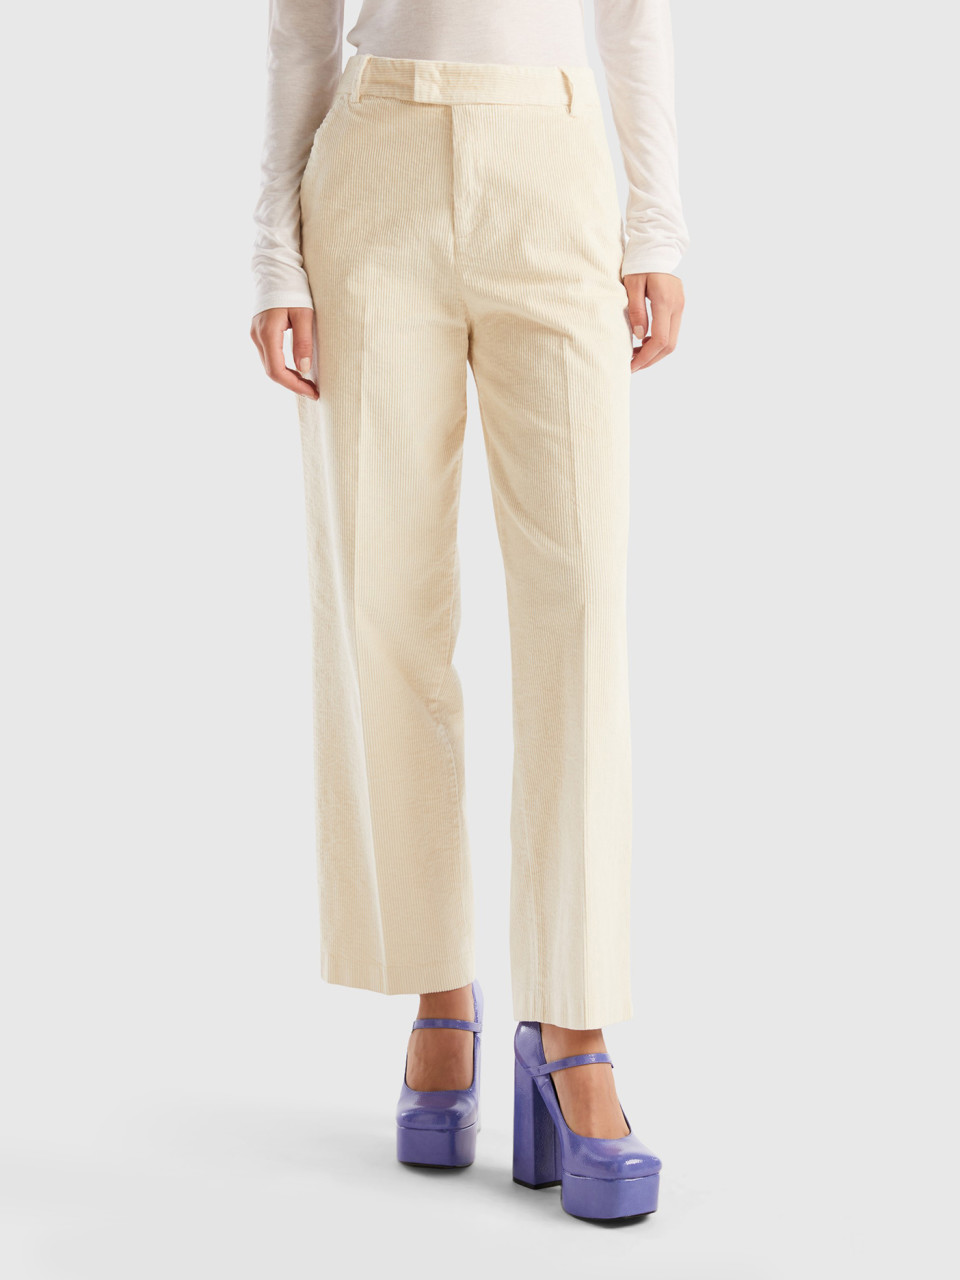 Benetton, Straight Corduroy Trousers, Creamy White, Women